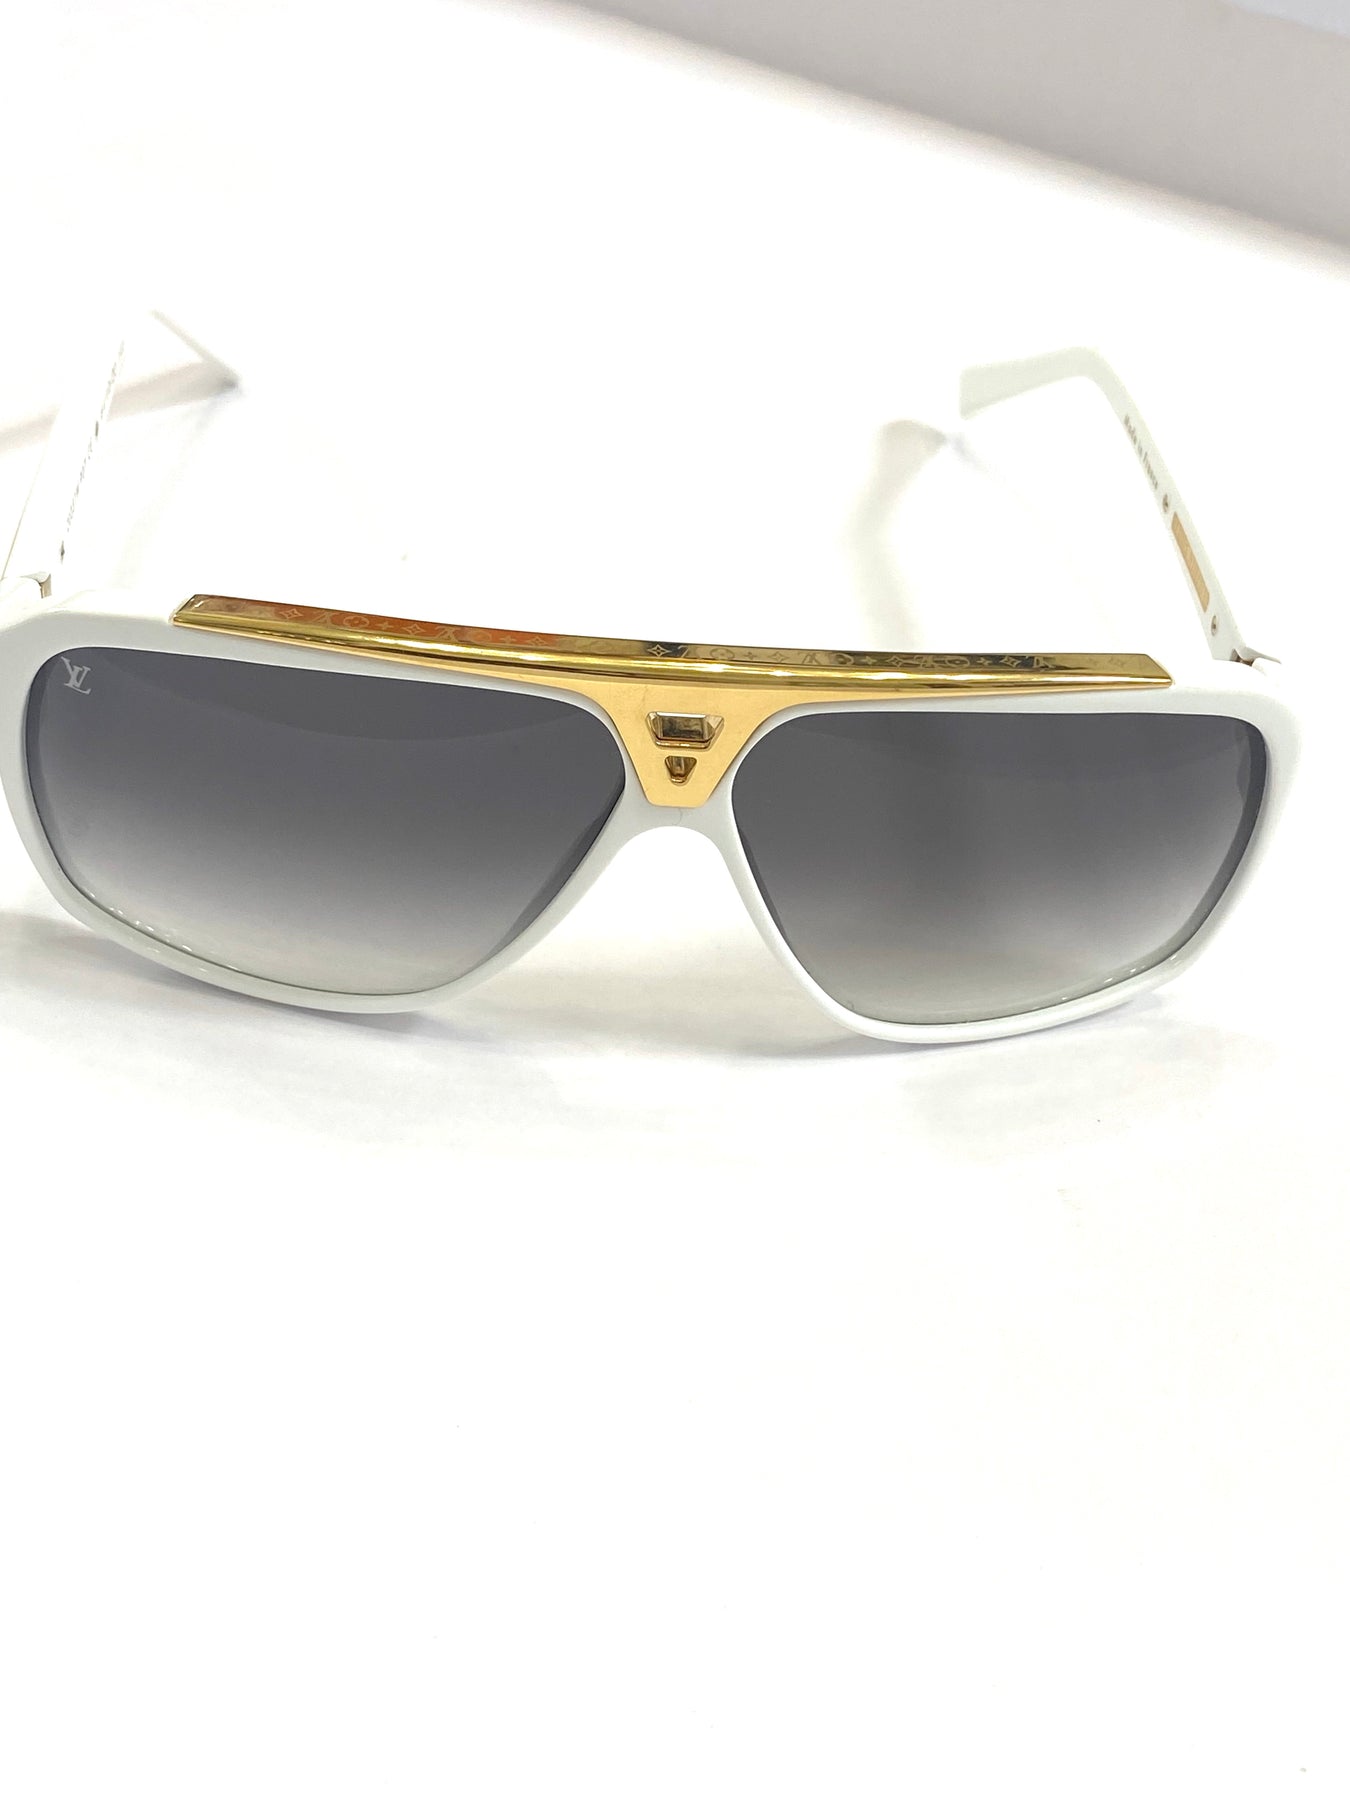 Louis Vuitton Rare z0351w White x Gold Millionaire Evidence Sunglasses  141lvs78